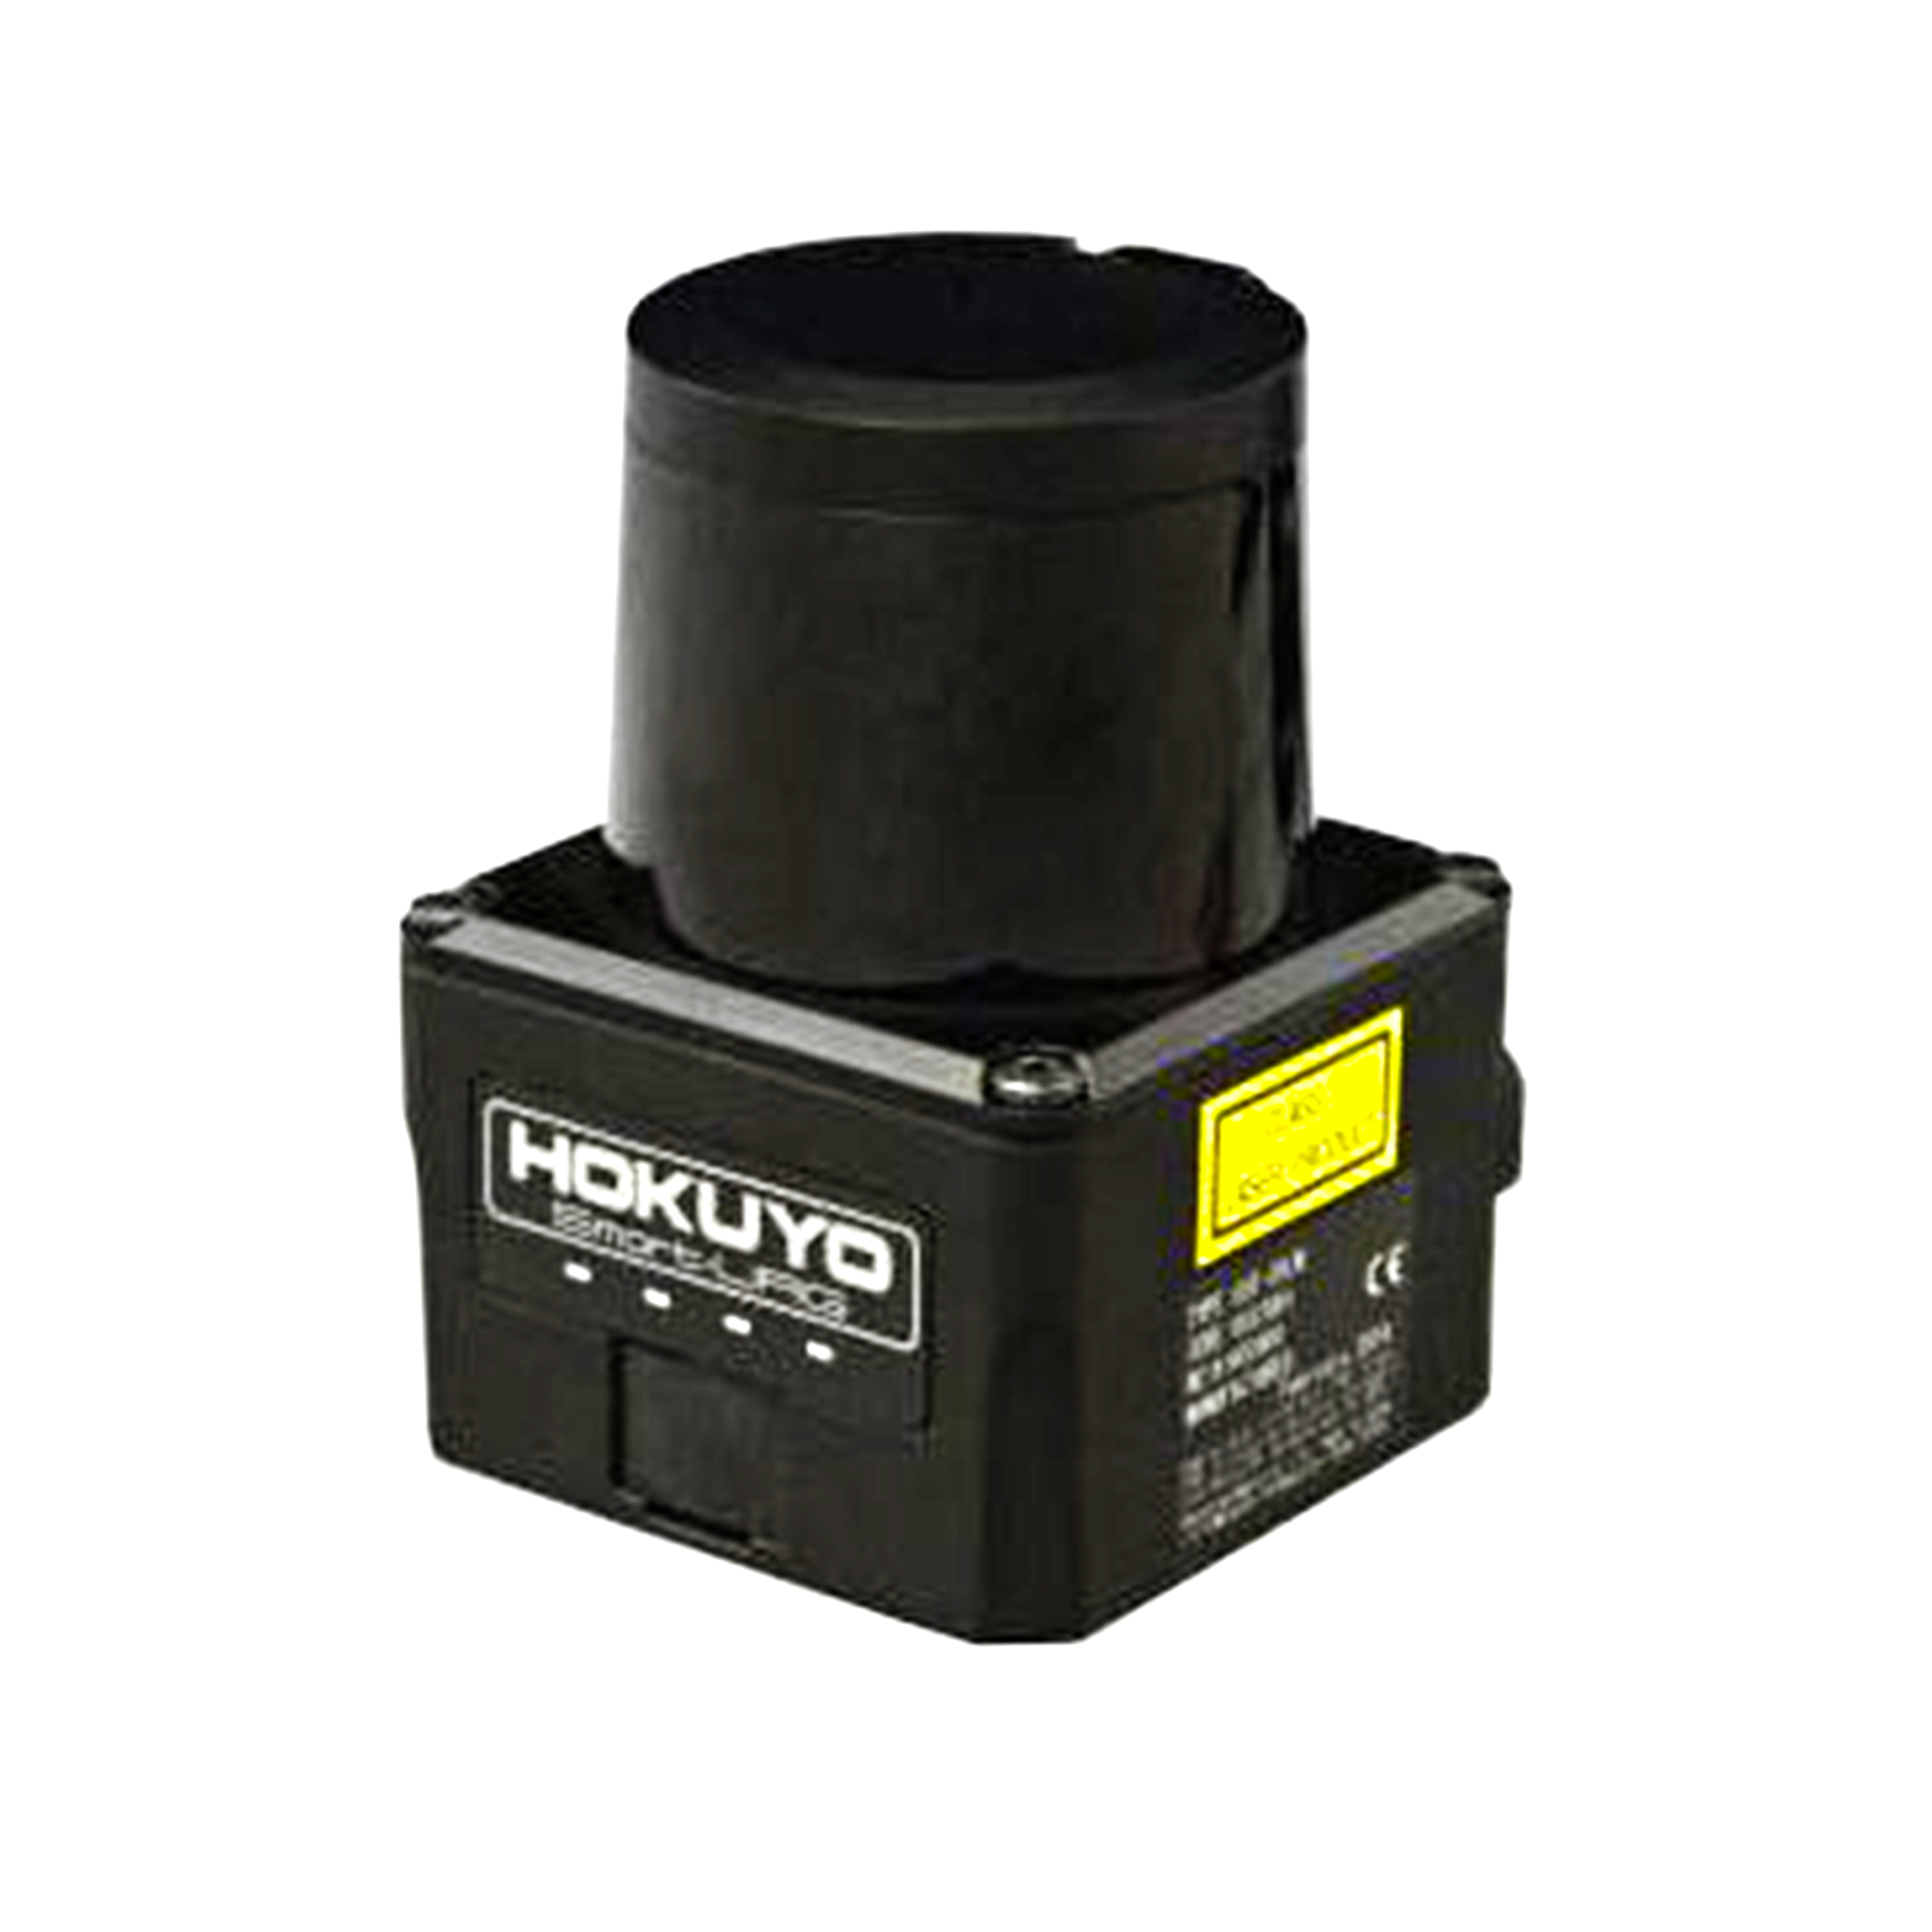 Hokuyo Original UST-05LX Scanning Laser Range Finder